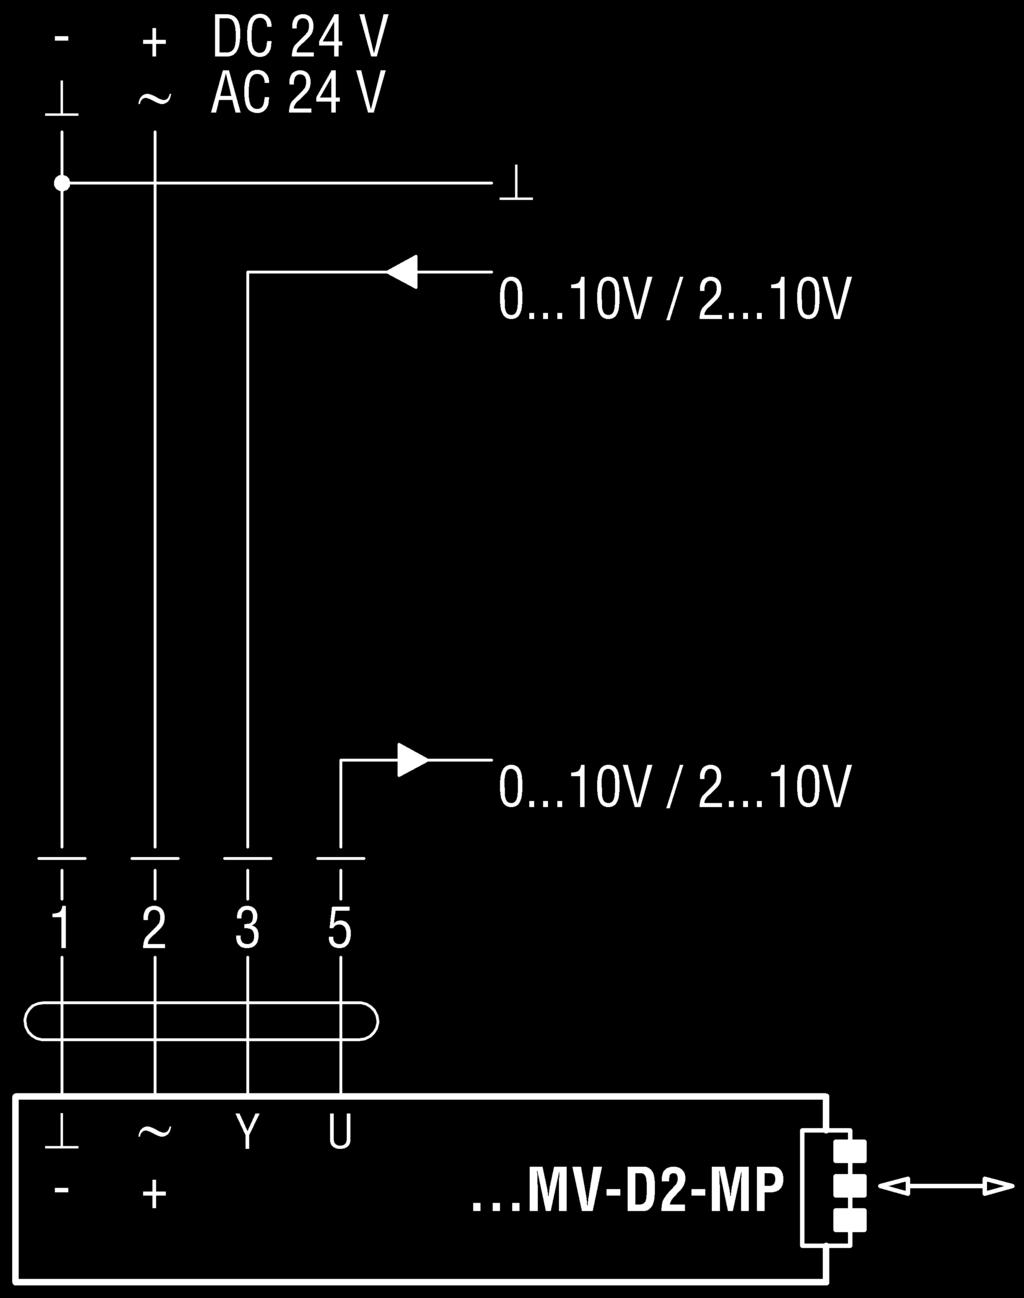 Schemat podłączenia Schemat podłączenia standardowego siłownika Kompaktowy regulator Belimo LMV-D2-MP / NMV-D2-MP VAV z analogowym sygna³em steruj¹cym